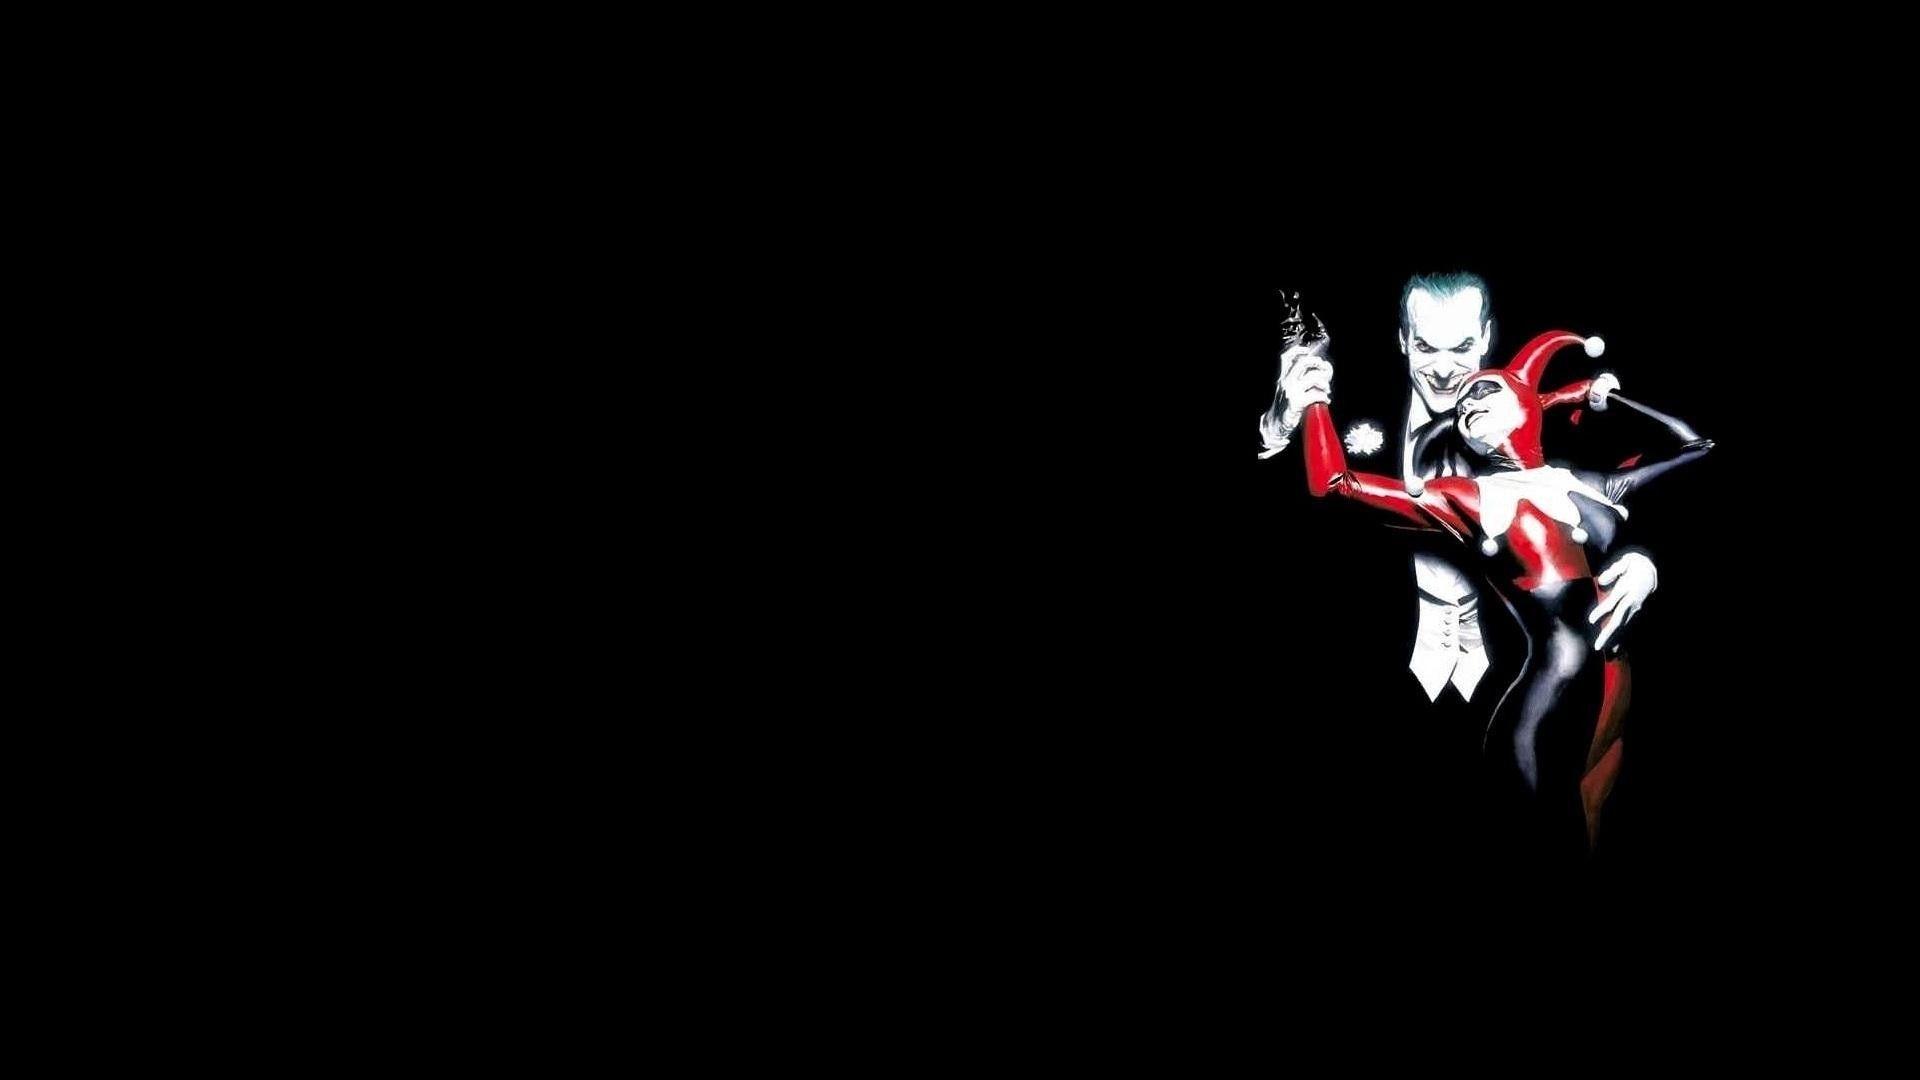 Joker, Harley Quinn Wallpaper HD / Desktop and Mobile Background